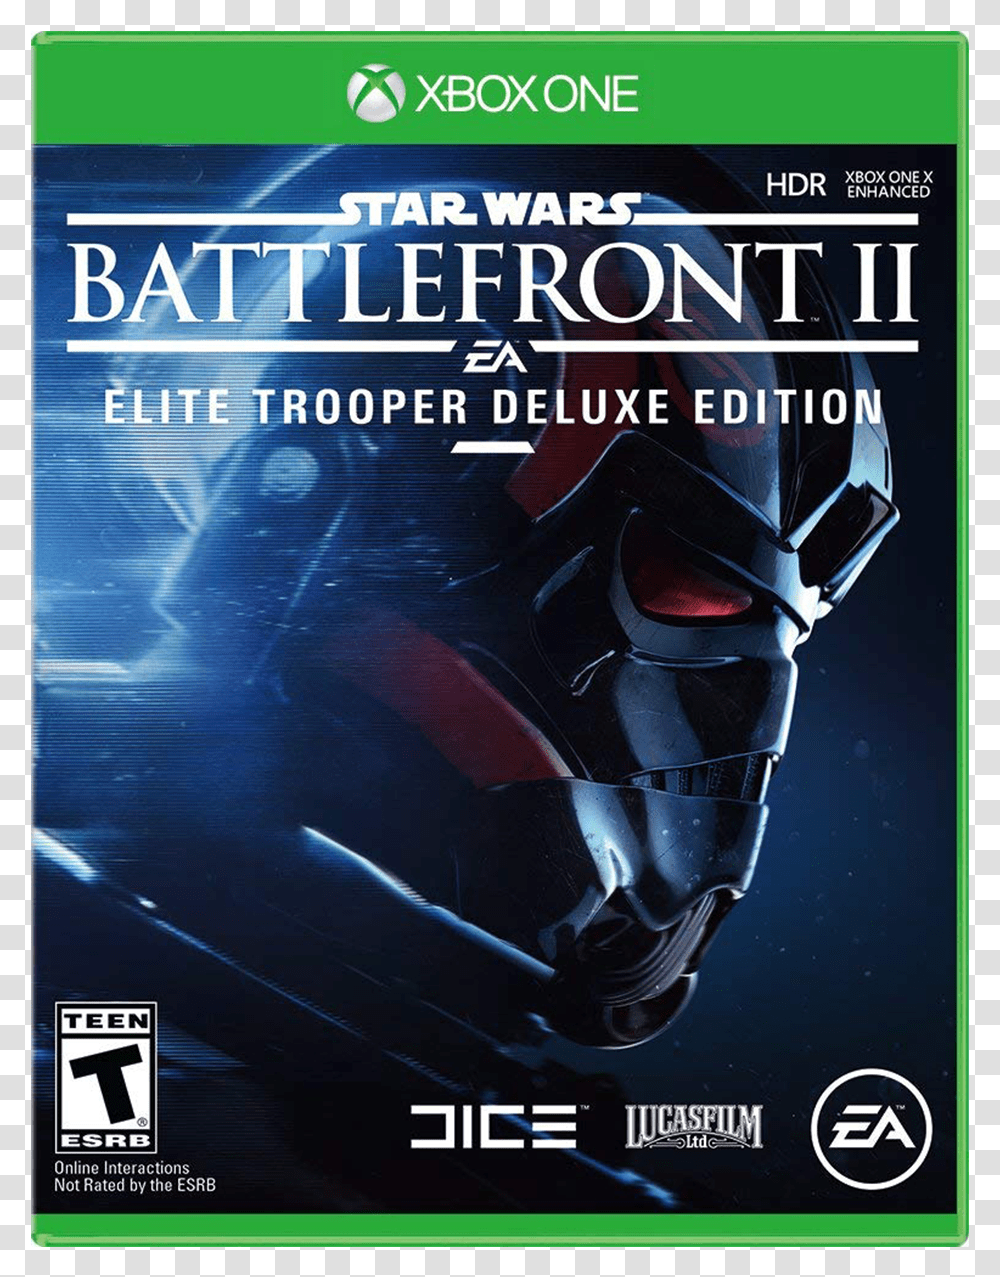 Battlefront 2 Elite Trooper Edition, Poster, Advertisement, Flyer, Paper Transparent Png